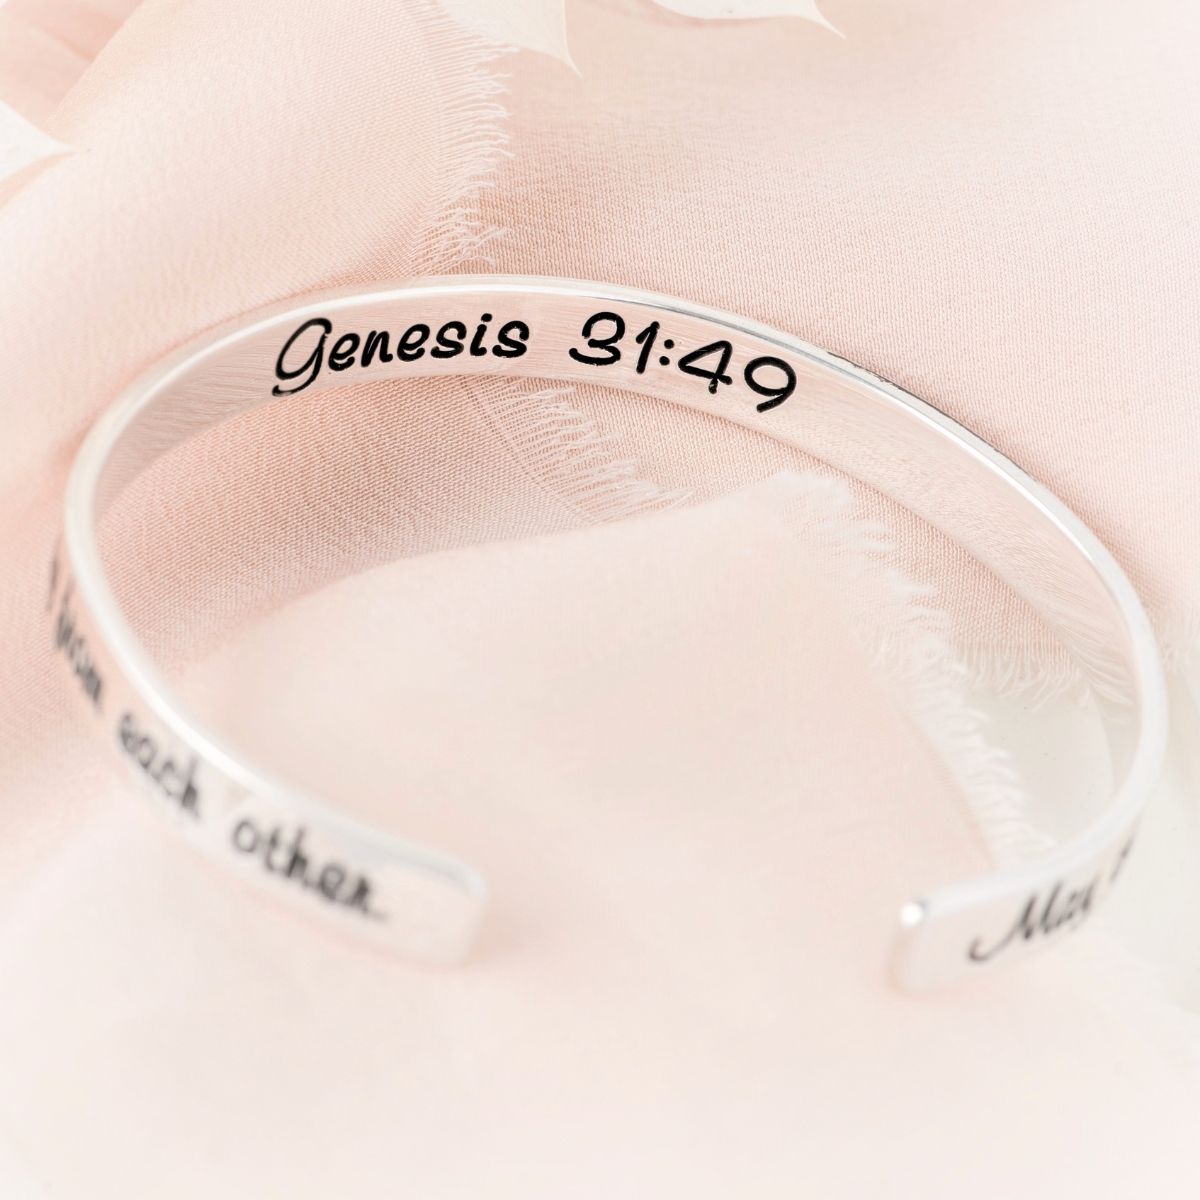 Genesis 31:49 Mizpah Cuff Bracelet | Sterling Silver or 14k Gold